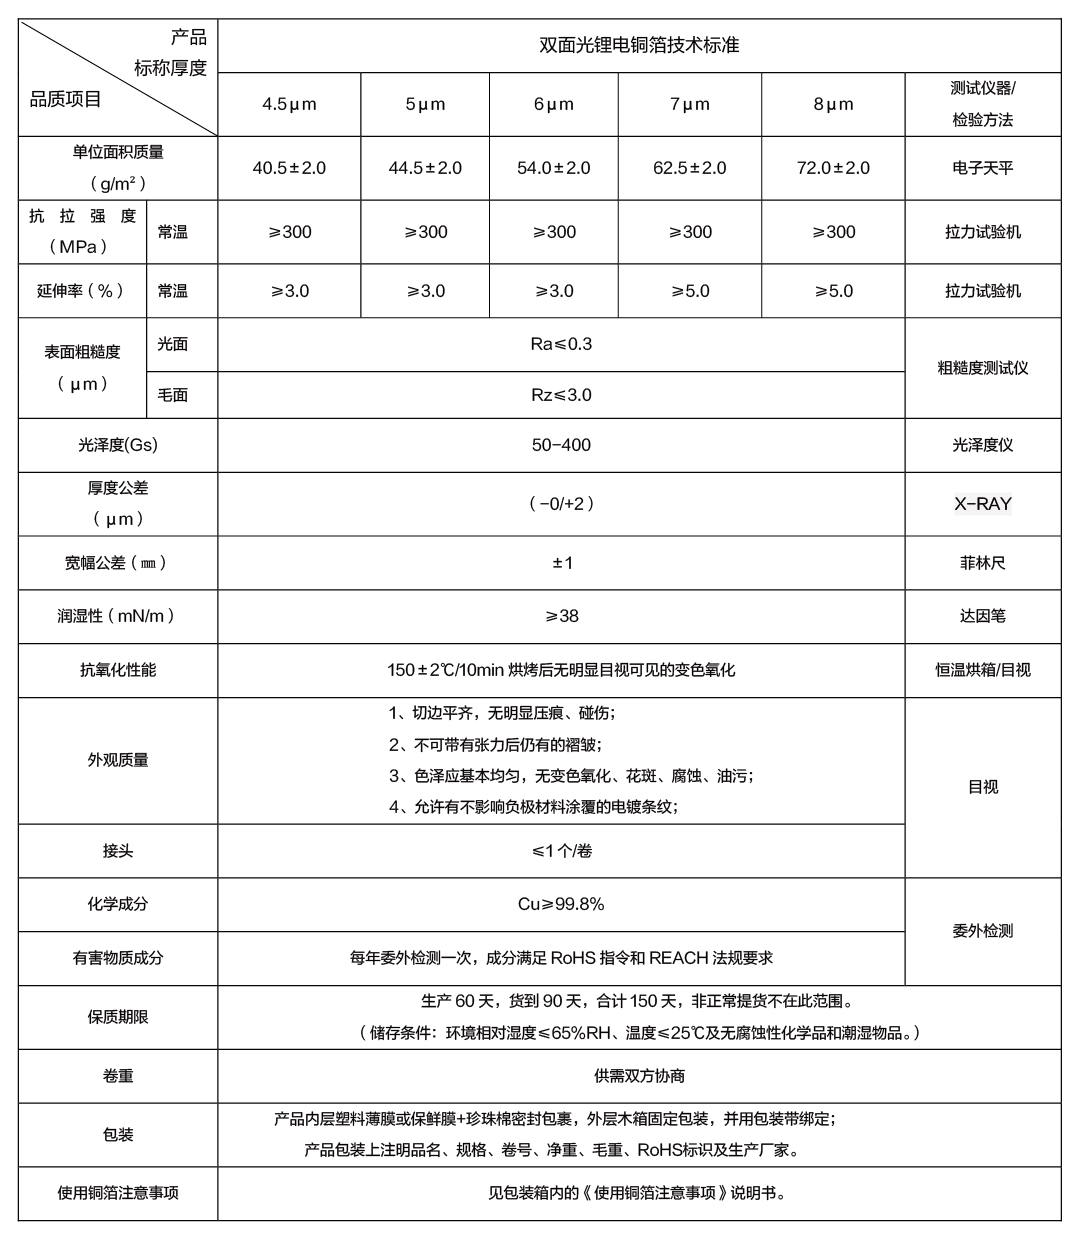 雙面光鋰電銅箔技術標準_畫板 1.png